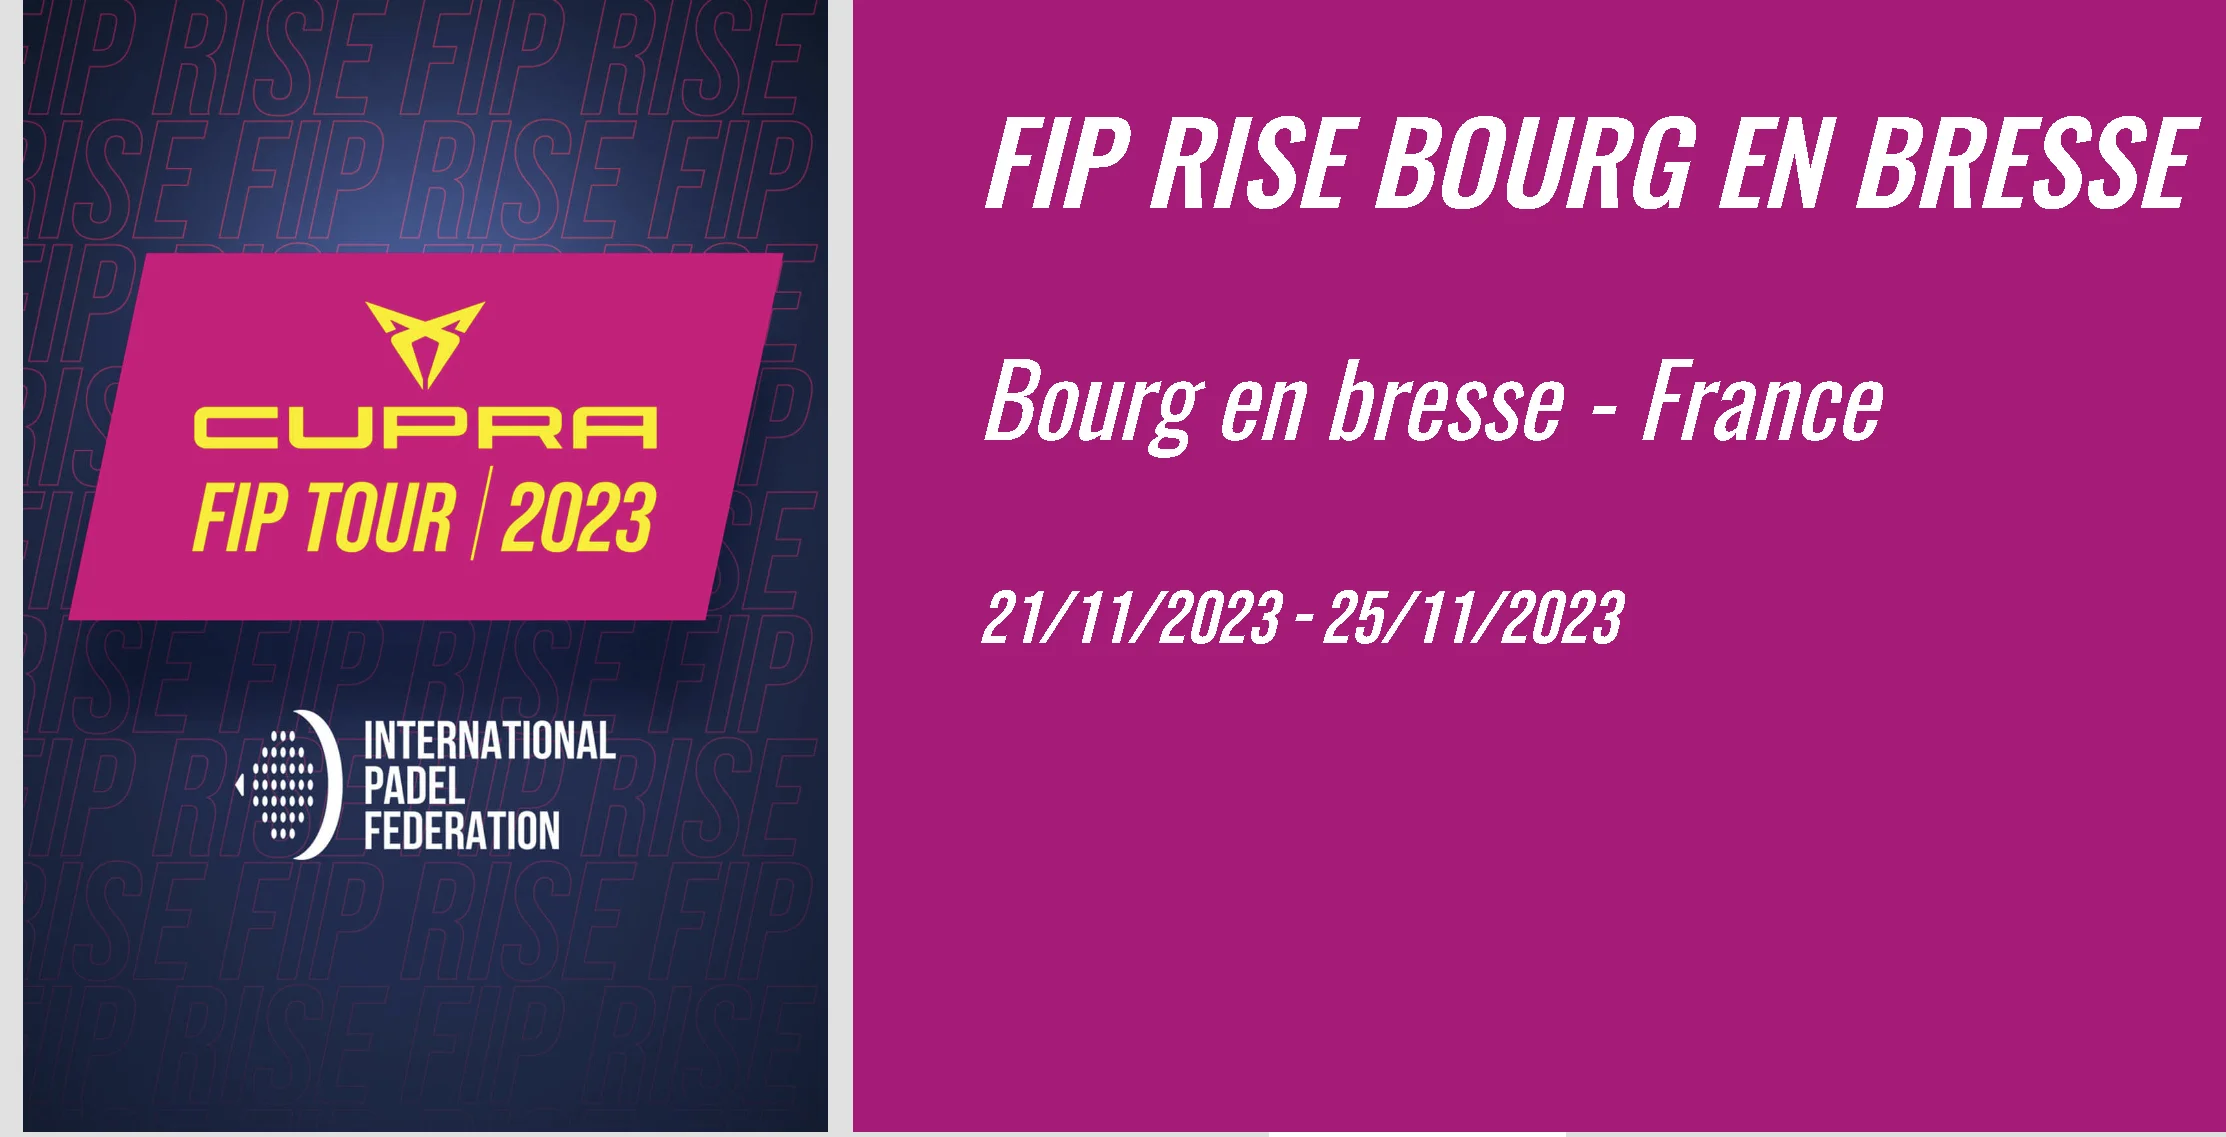 FIP RISE Bourg-en-Bresse: Die Kasse ist bereits geöffnet!